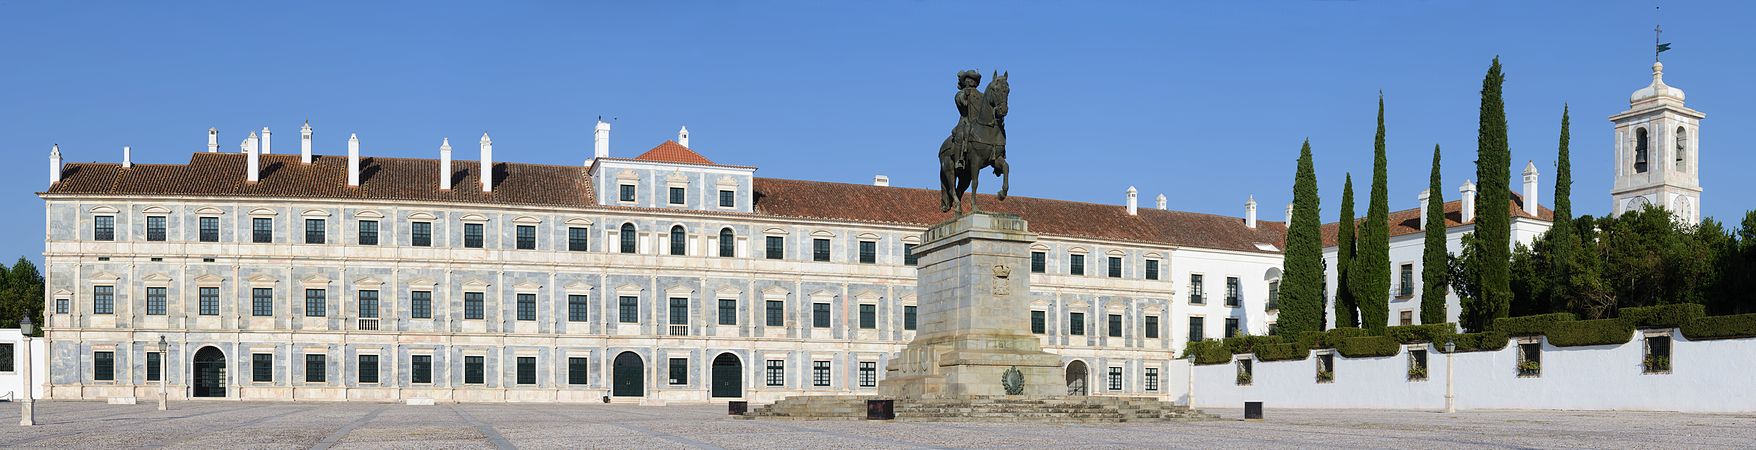 Ducal Palace of Vila Viçosa, by Alvesgaspar